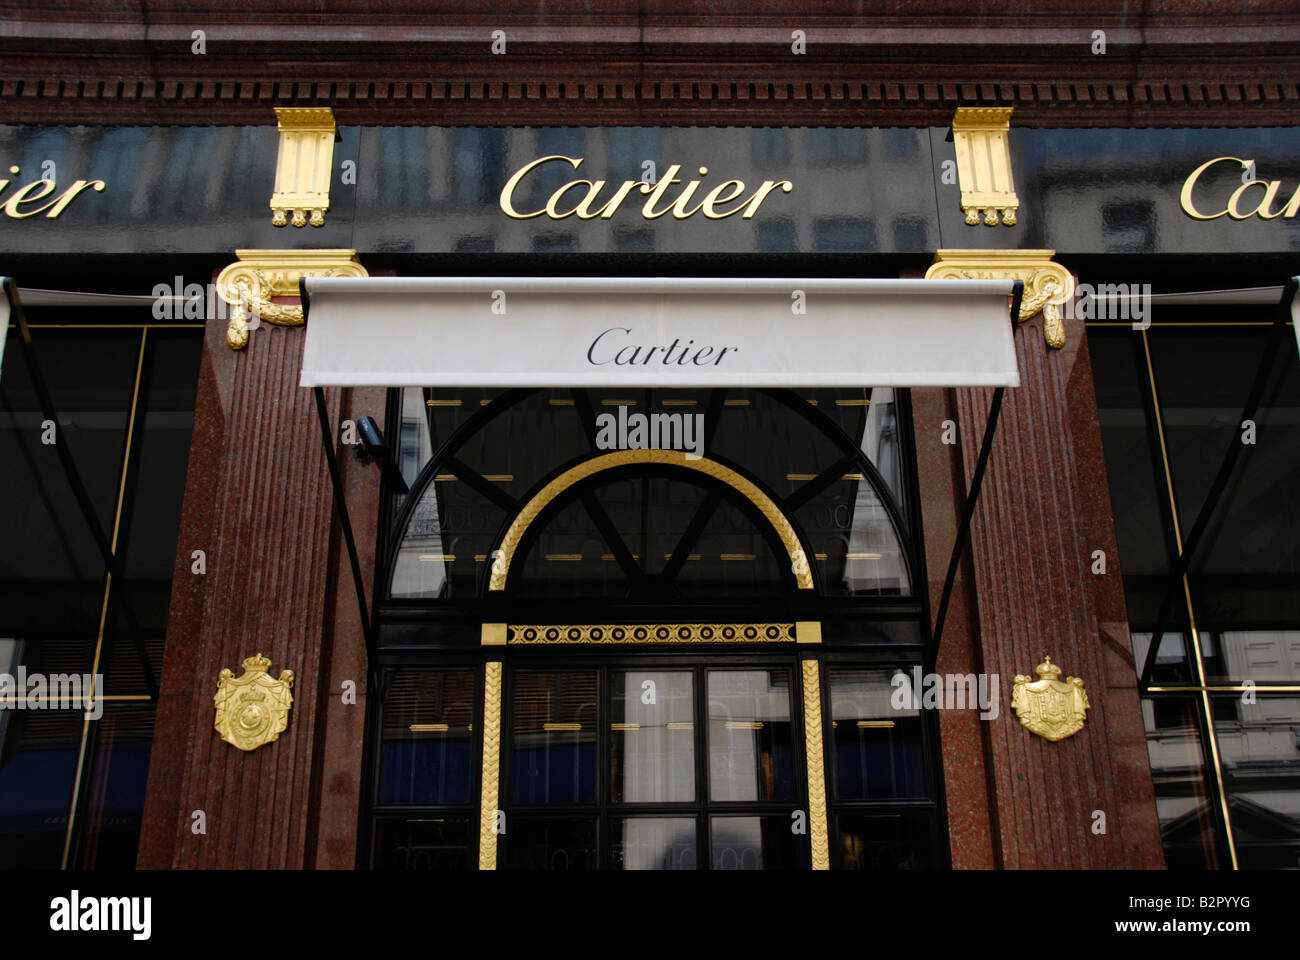 cartier shops england